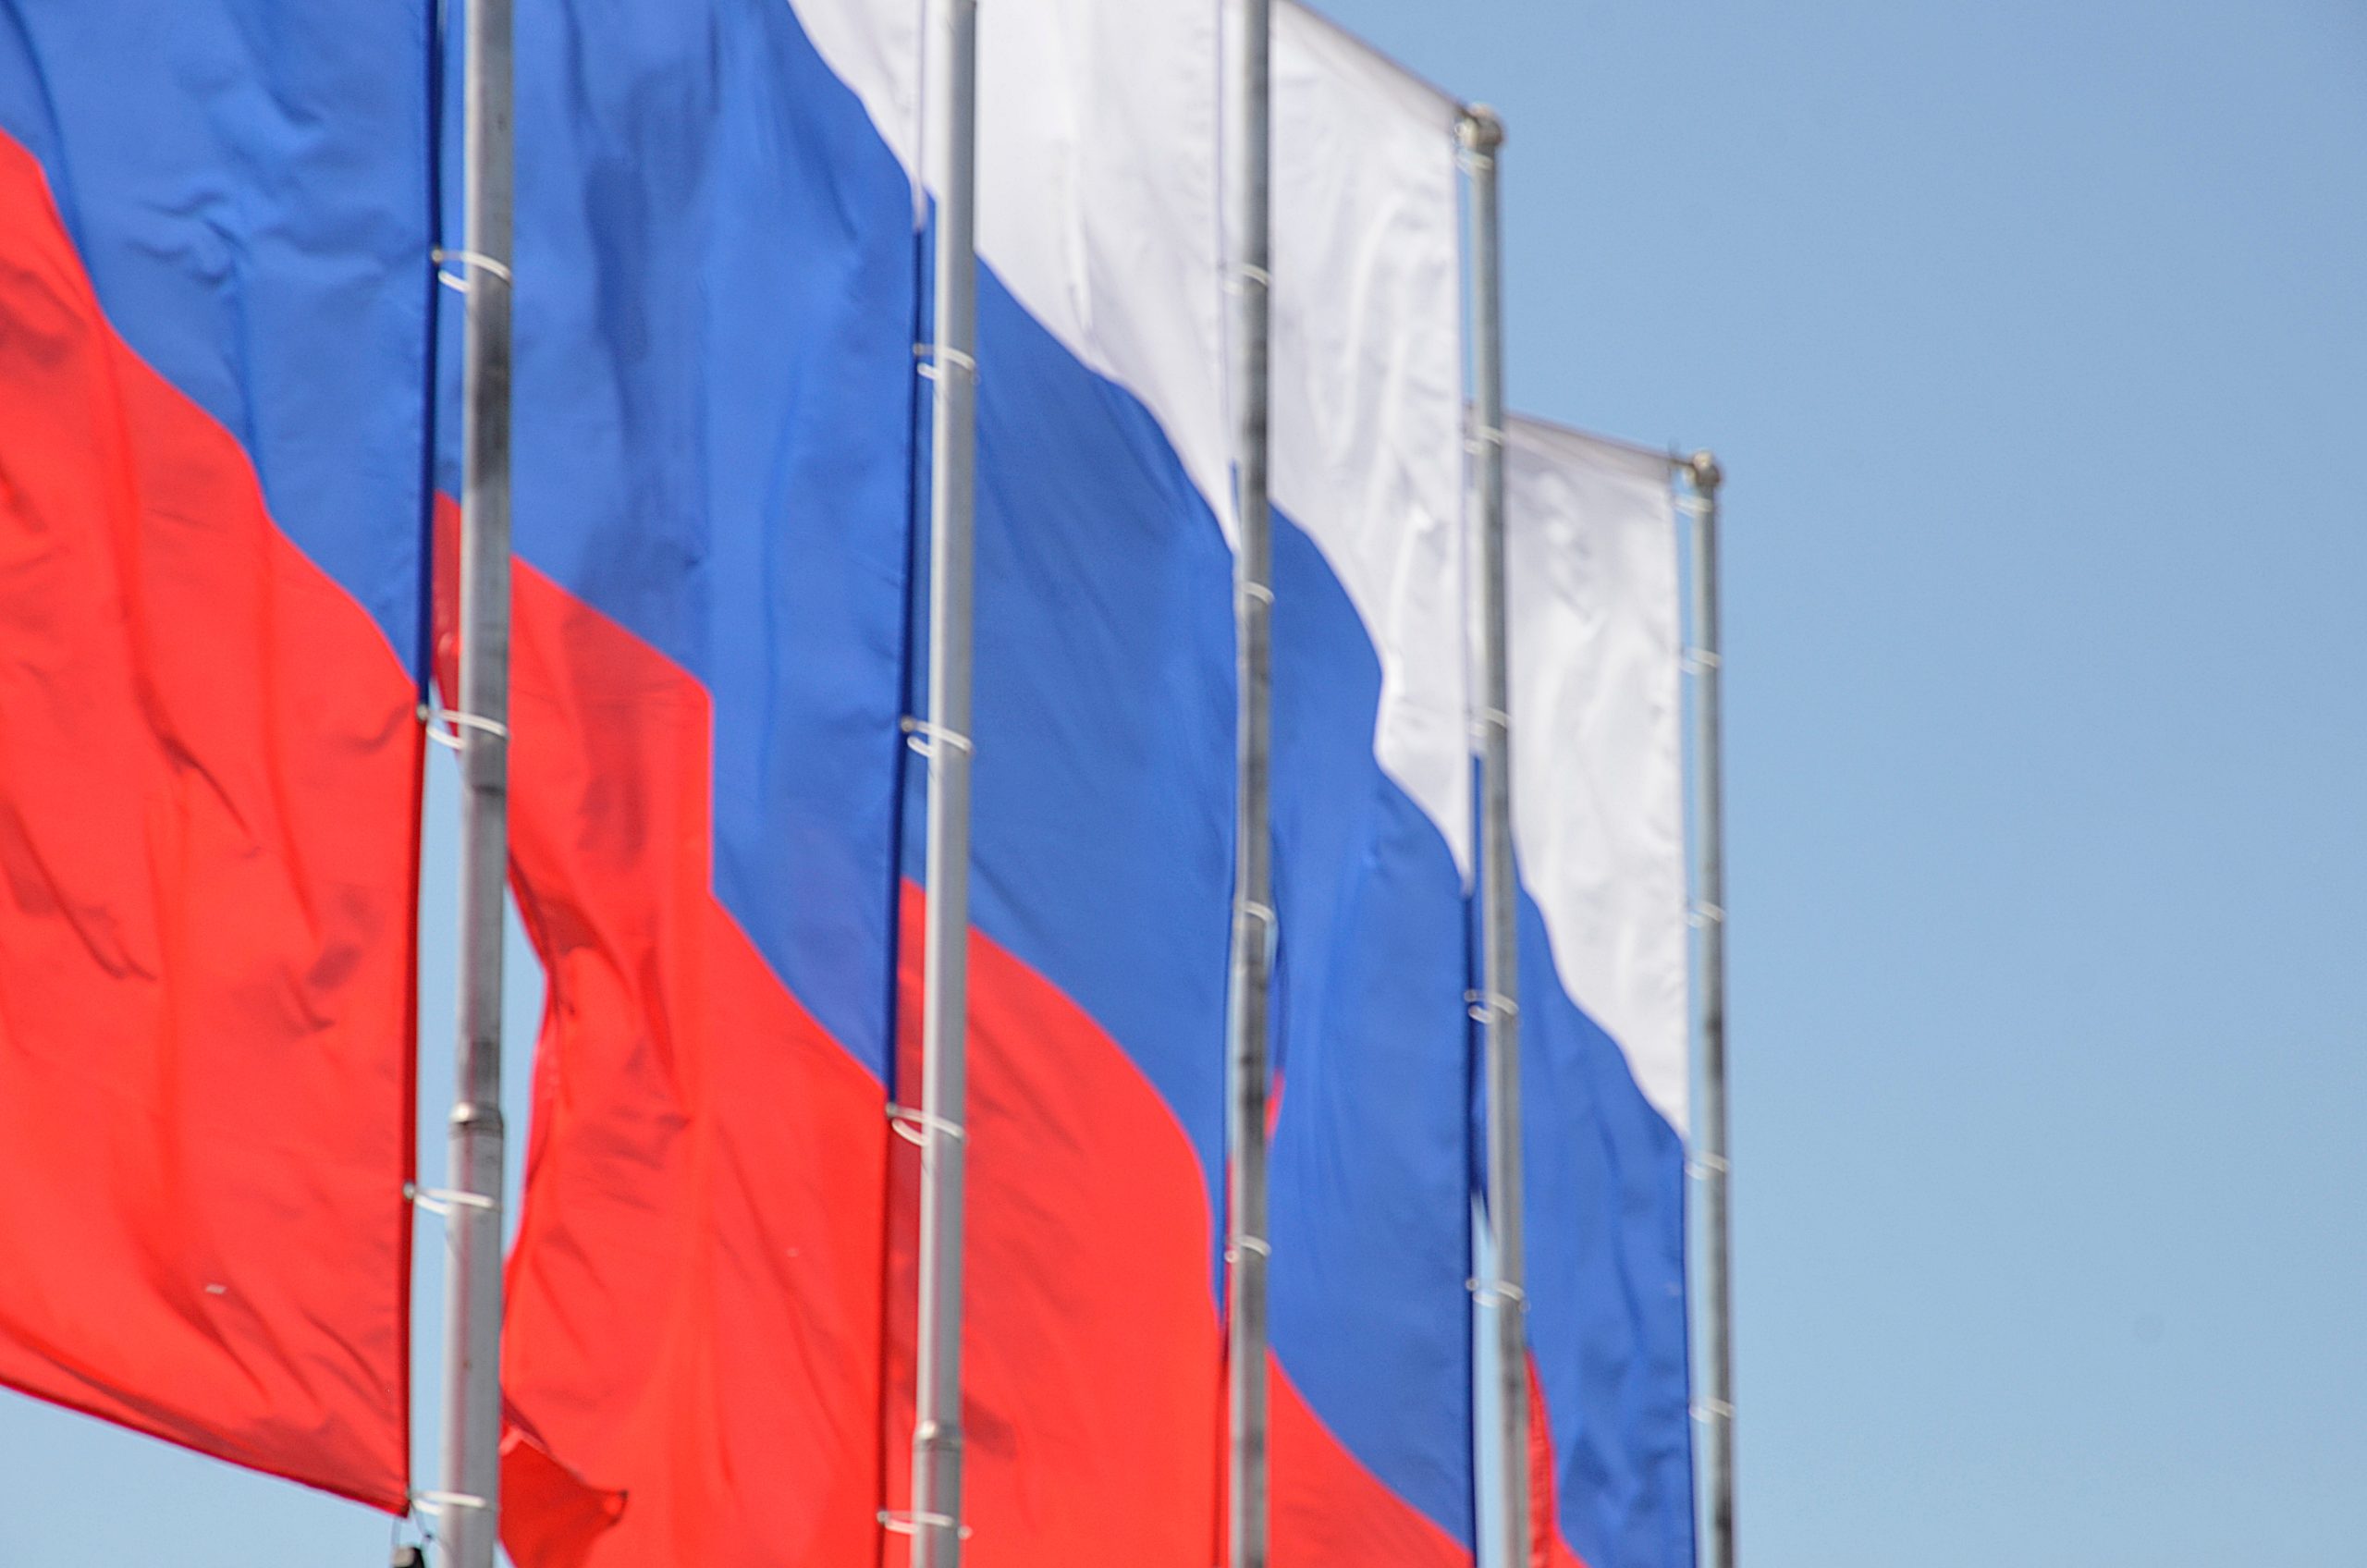 Отмечаем день государственного символа, или Праздник в «Наш флаг — наша гордость» проведут в Аршиновском парке